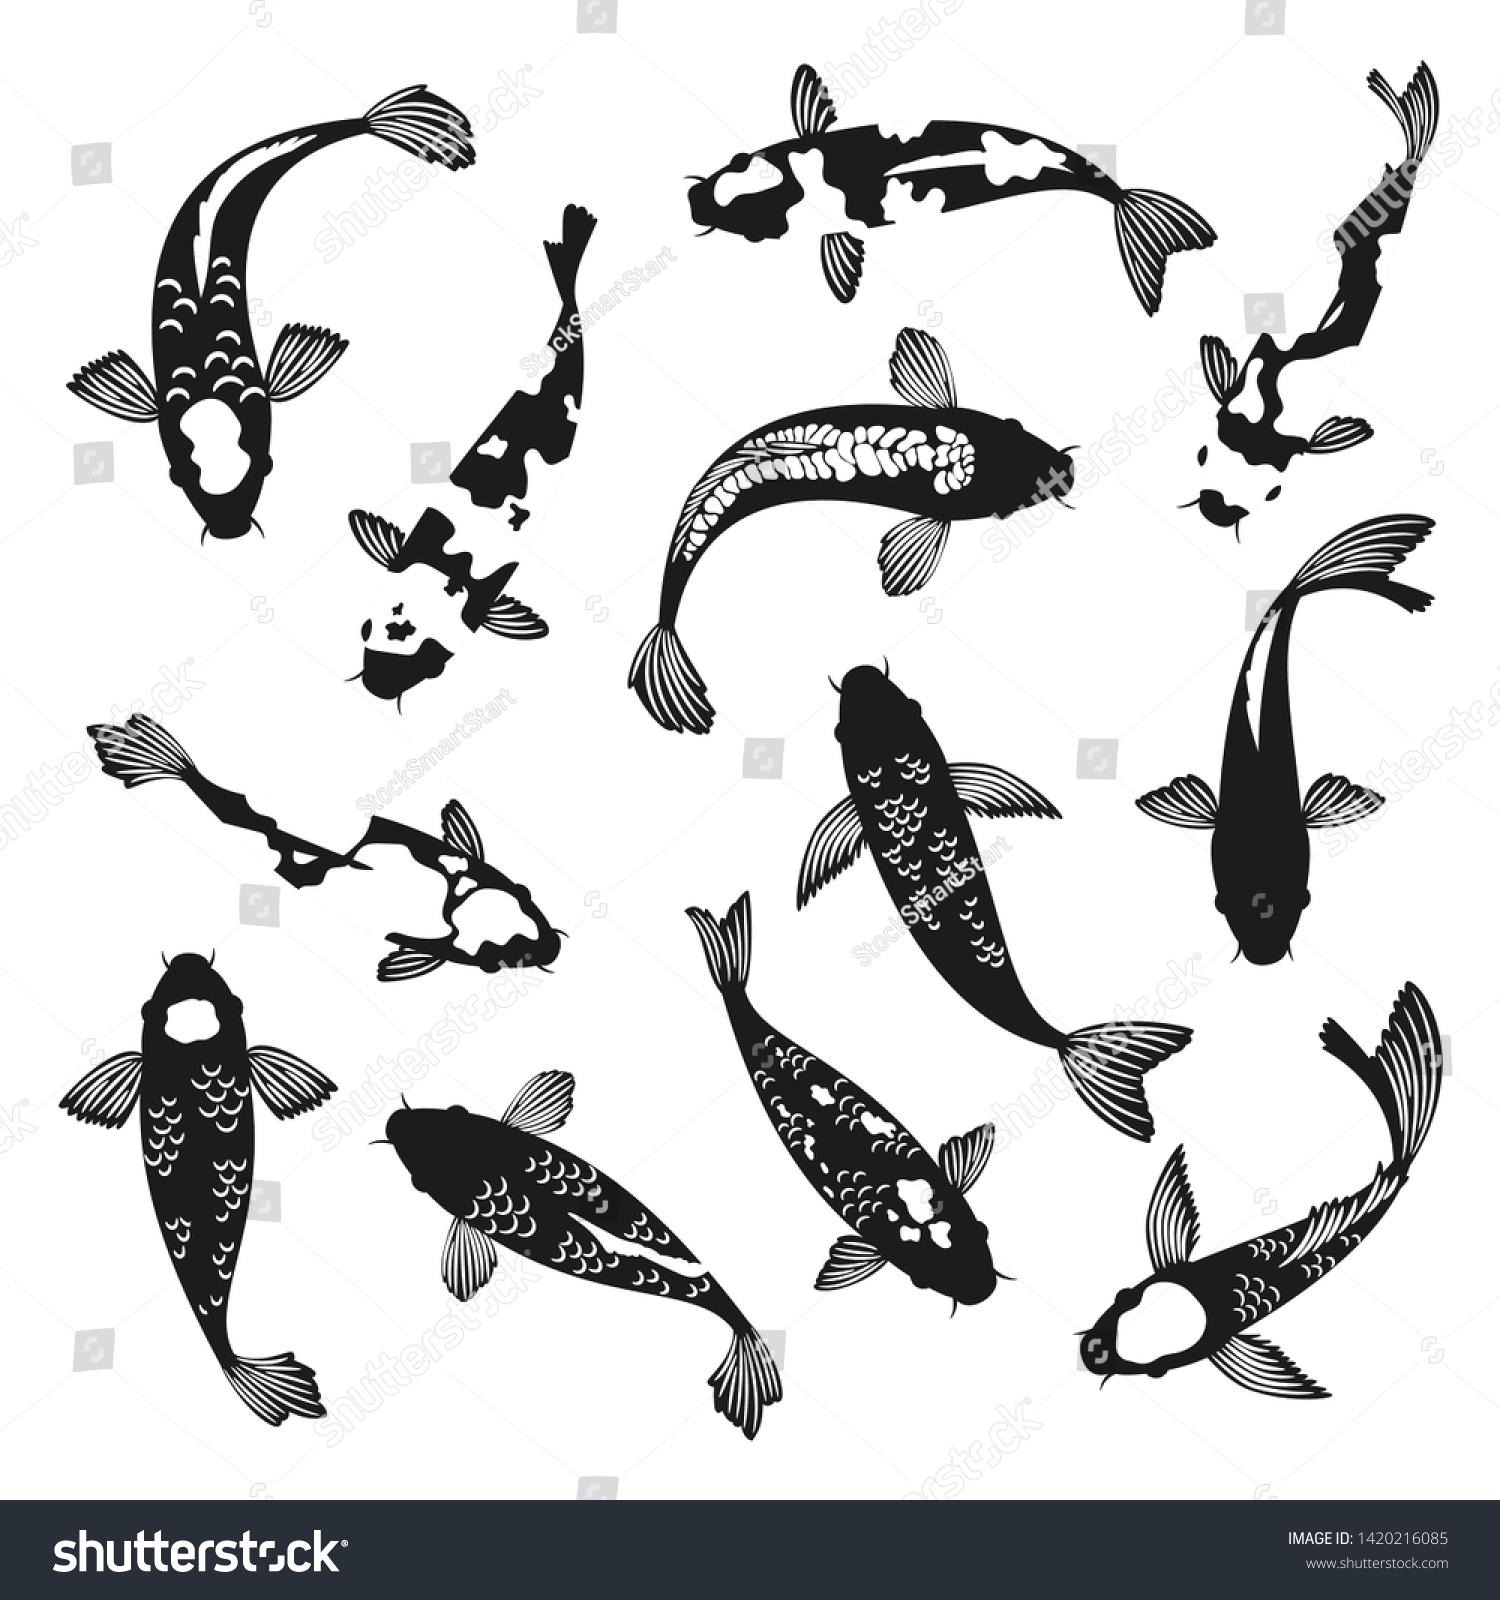 鯉がシルエットになる 白黒の泳ぎ鯉の魚の絵ベクターイラスト アジアの中国や日本の魚のシルエットベクター画像 のベクター画像素材 ロイヤリティフリー